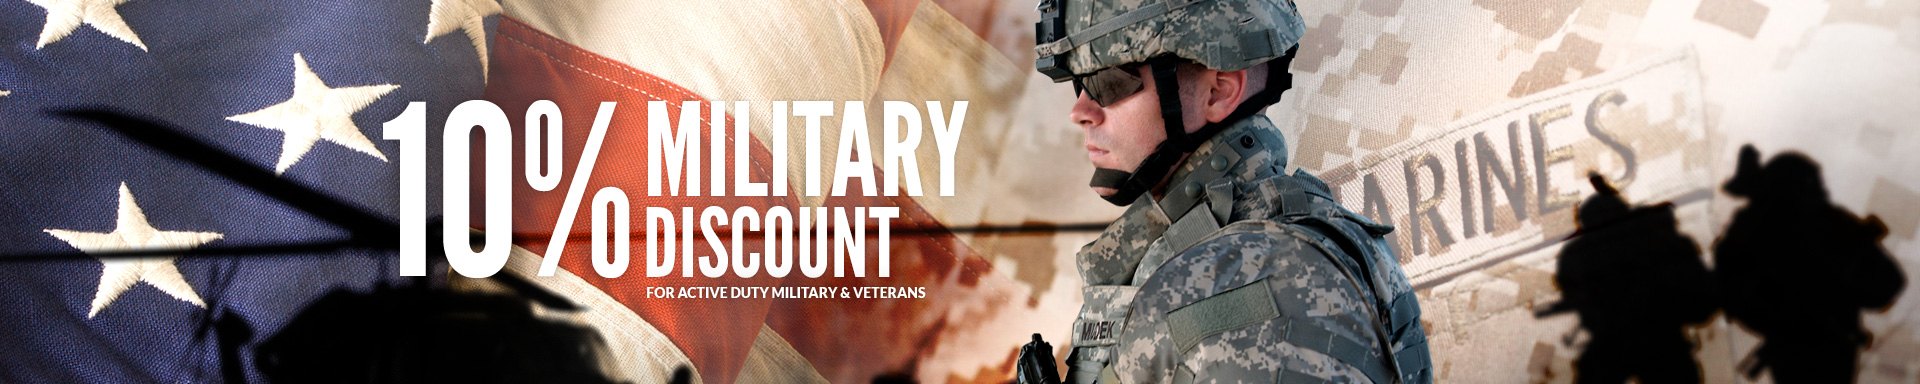 Military Discounts at RECREATIONiD.com